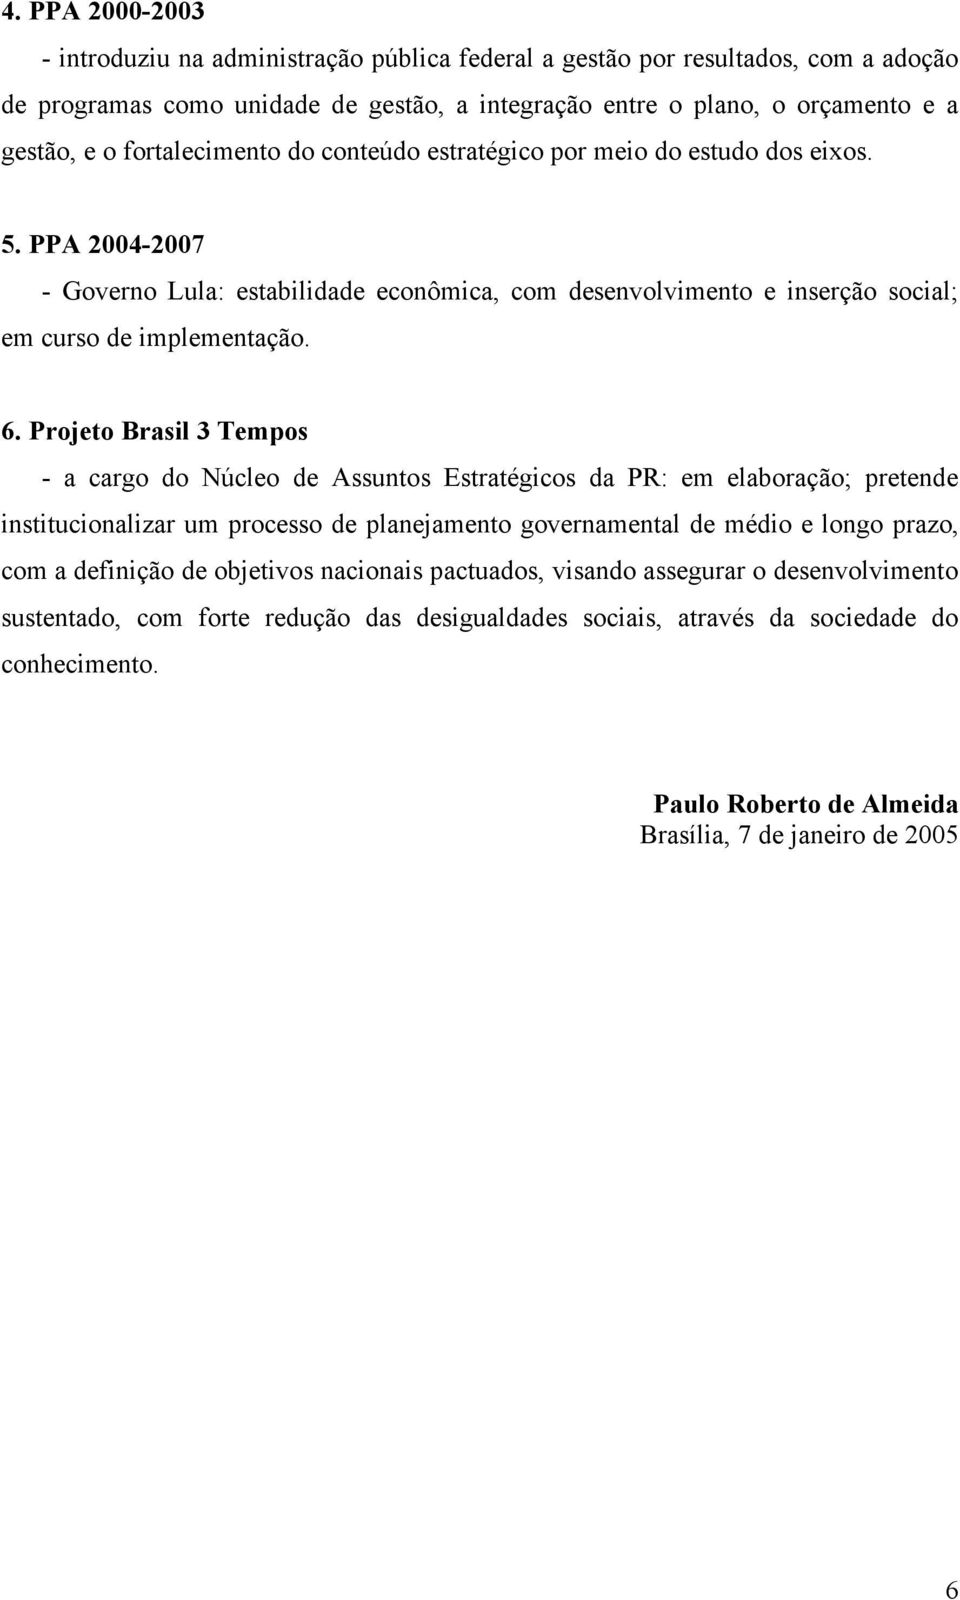 Projeto Brasil 3 Tempos - a cargo do Núcleo de Assuntos Estratégicos da PR: em elaboração; pretende institucionalizar um processo de planejamento governamental de médio e longo prazo, com a definição